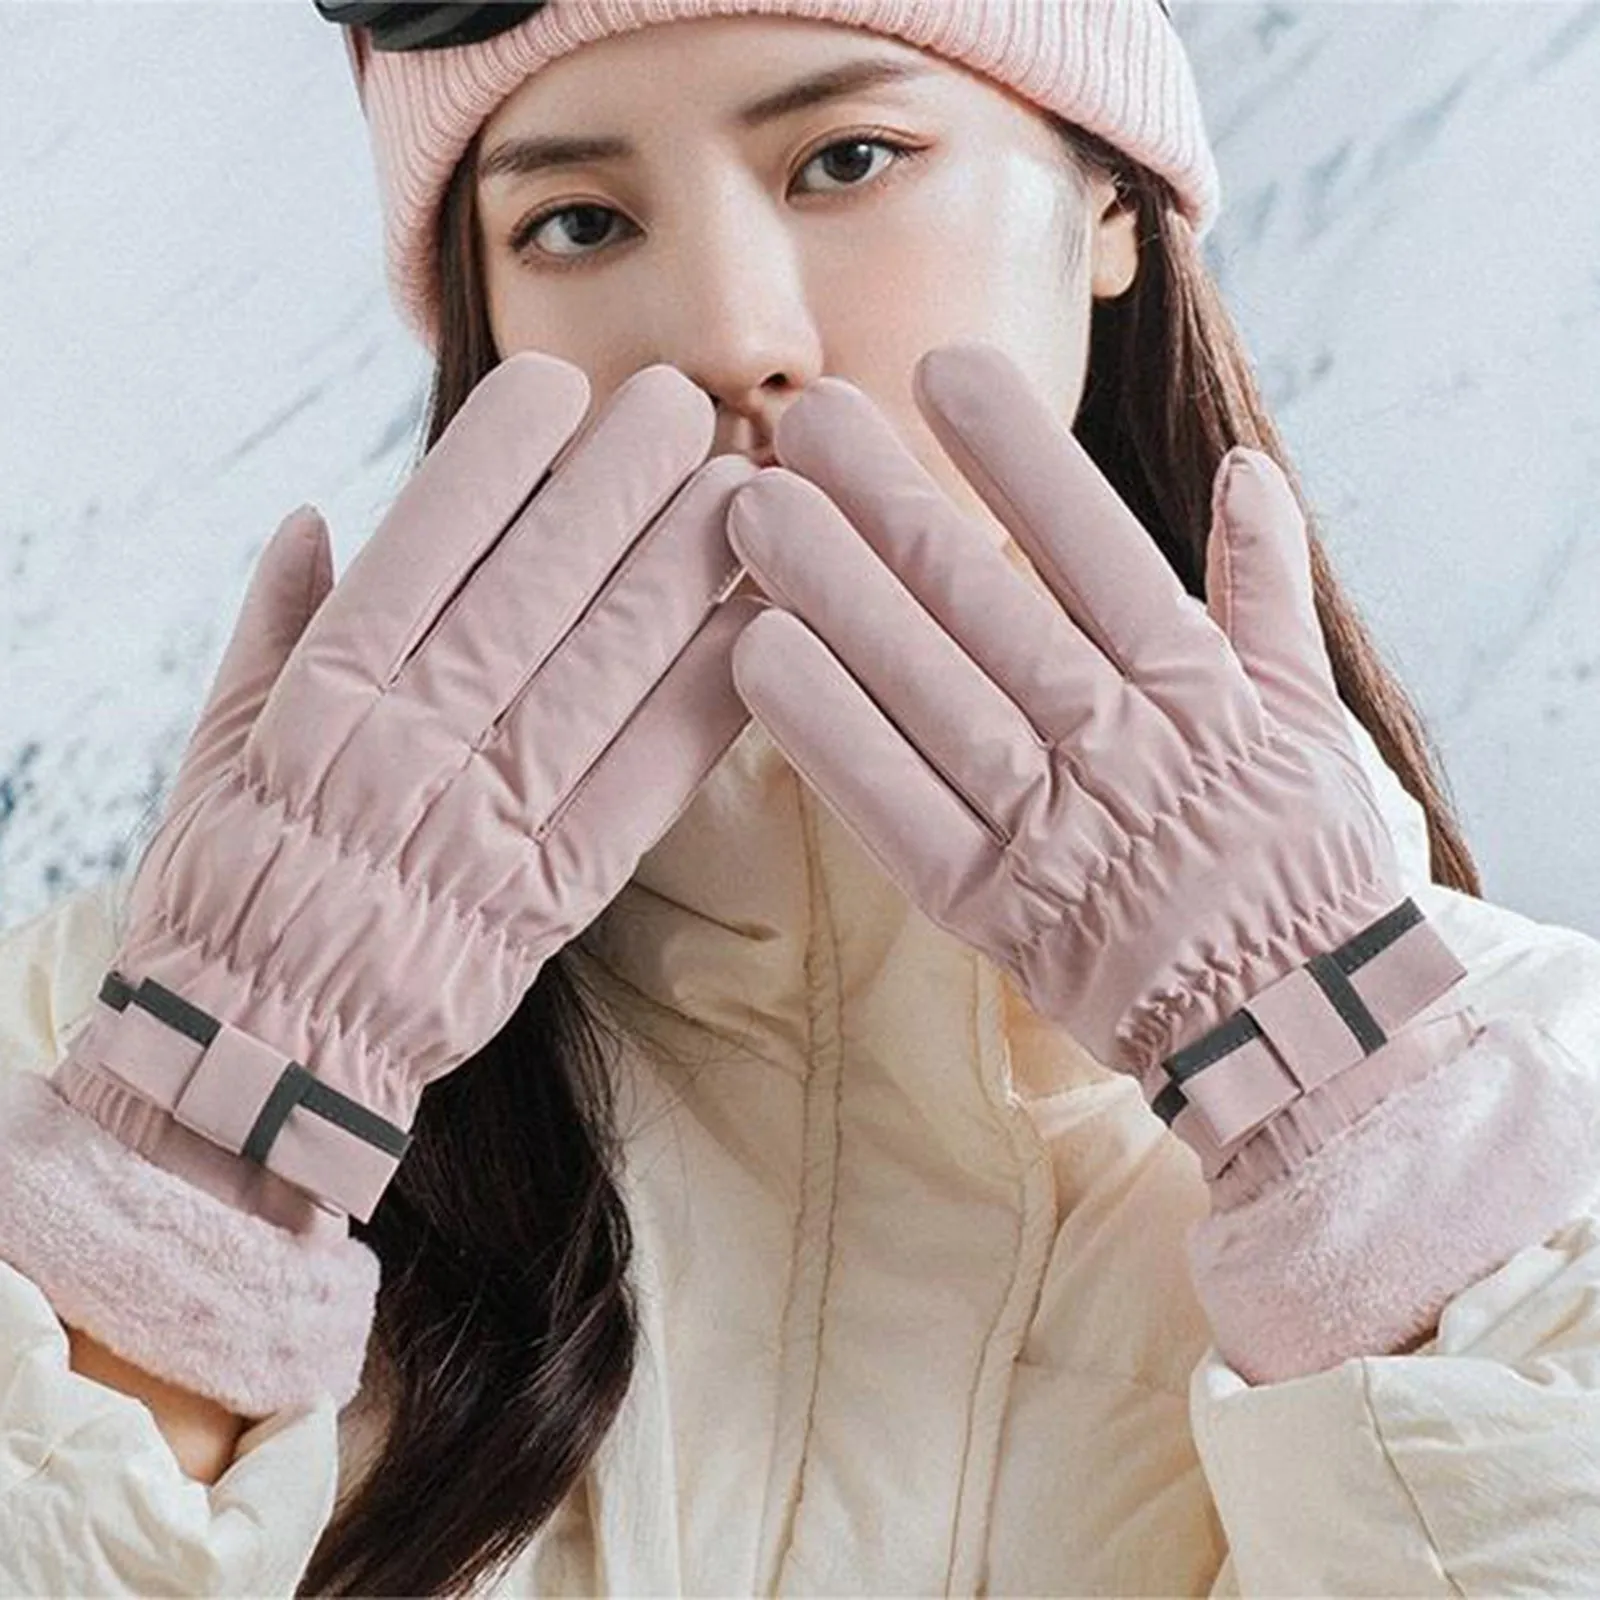 Зимние теплые перчатки, Флисовые Утолщенные рукавицы для полных пальцев, Велосипедные перчатки, Спорт на открытом воздухе, Бег, Мотоцикл, Лыжи, Перчатка с сенсорным экраном.